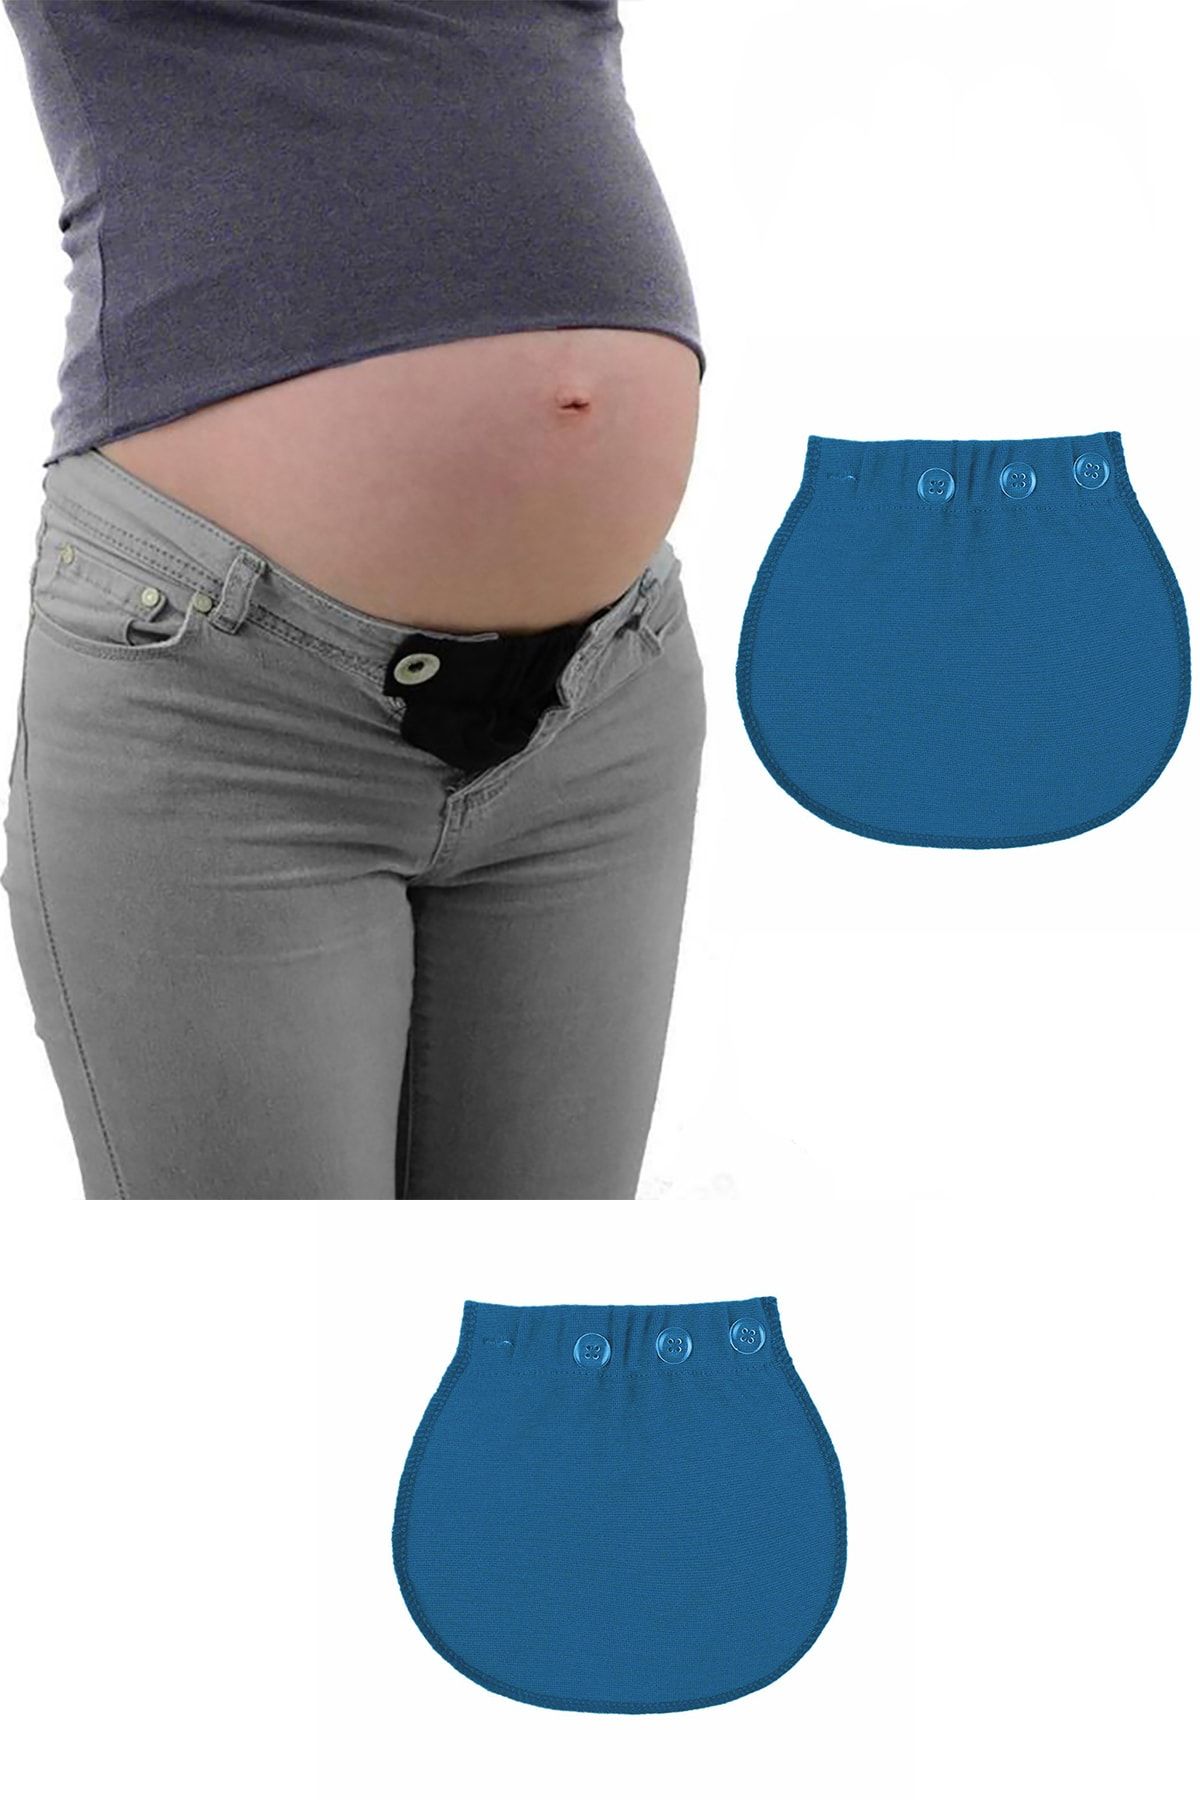 Pimobile Hamile Pantolonu Bel Genişletici-kadınlar Için Pantolon Genişletici Mavi 1 Adet